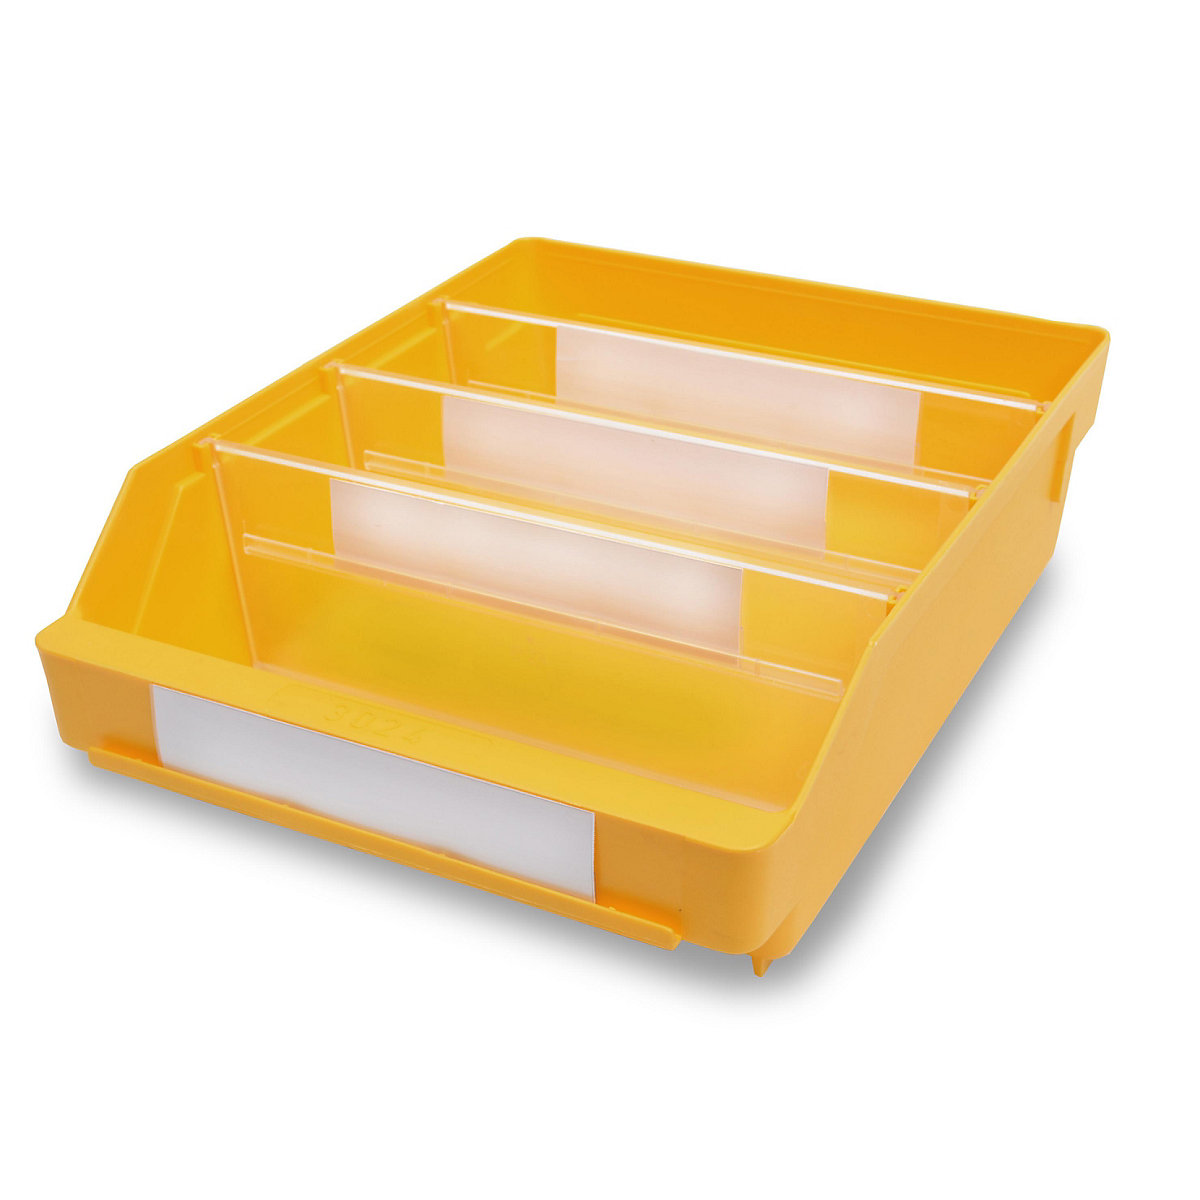 STEMO Regalkasten aus hochschlagfestem Polypropylen, gelb, LxBxH 300 x 240 x 95 mm, VE 15 Stk